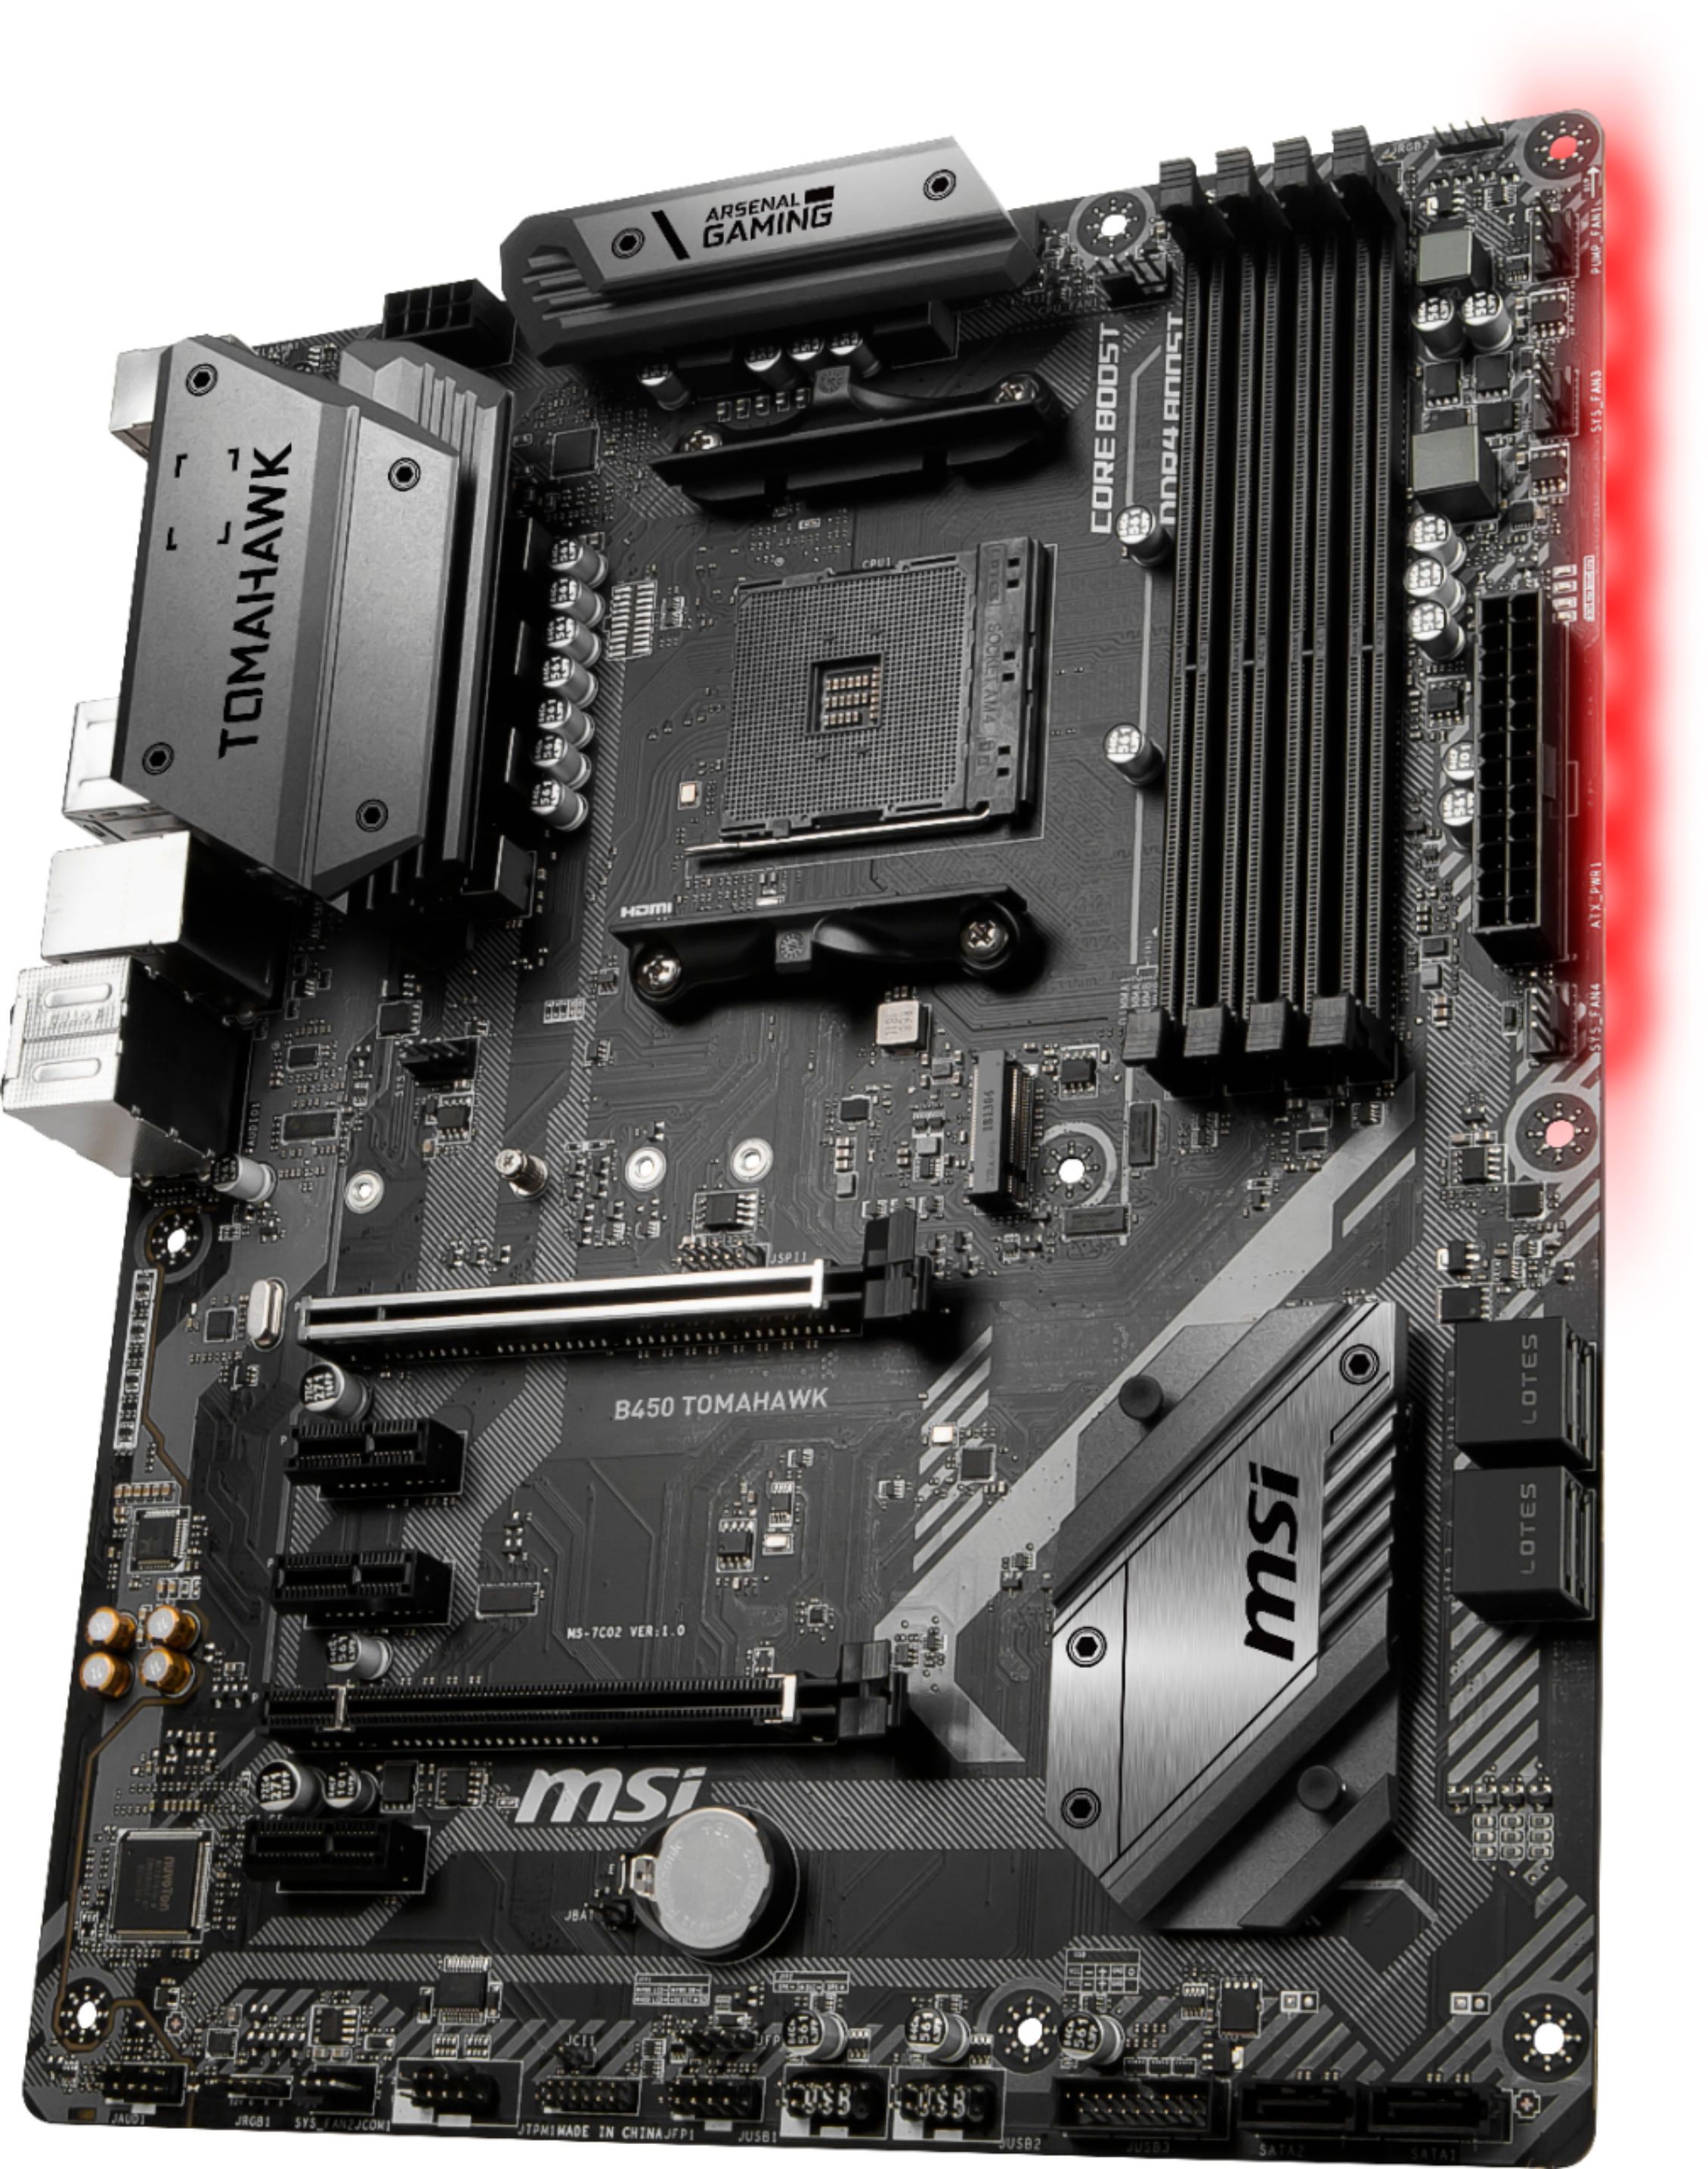 Best Buy: MSI B450 TOMAHAWK (Socket AM4) USB 3.1 Gen 1 AMD